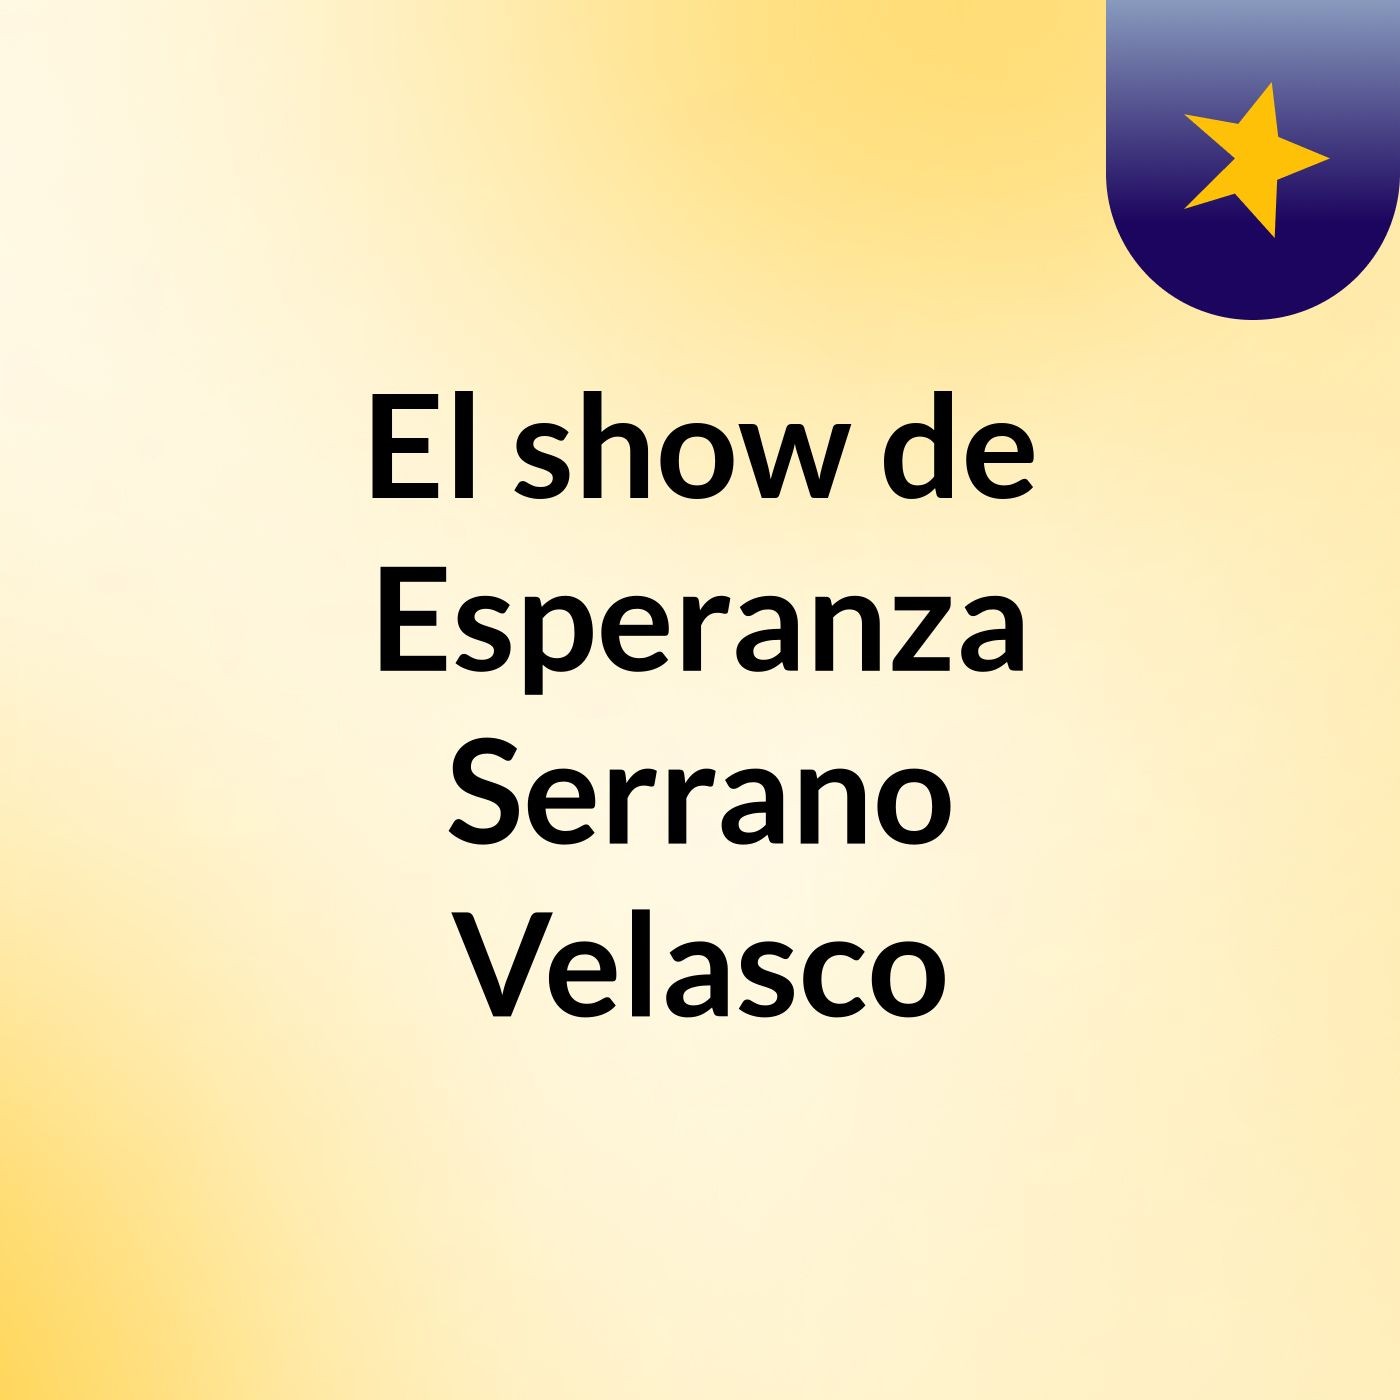 El show de Esperanza Serrano Velasco